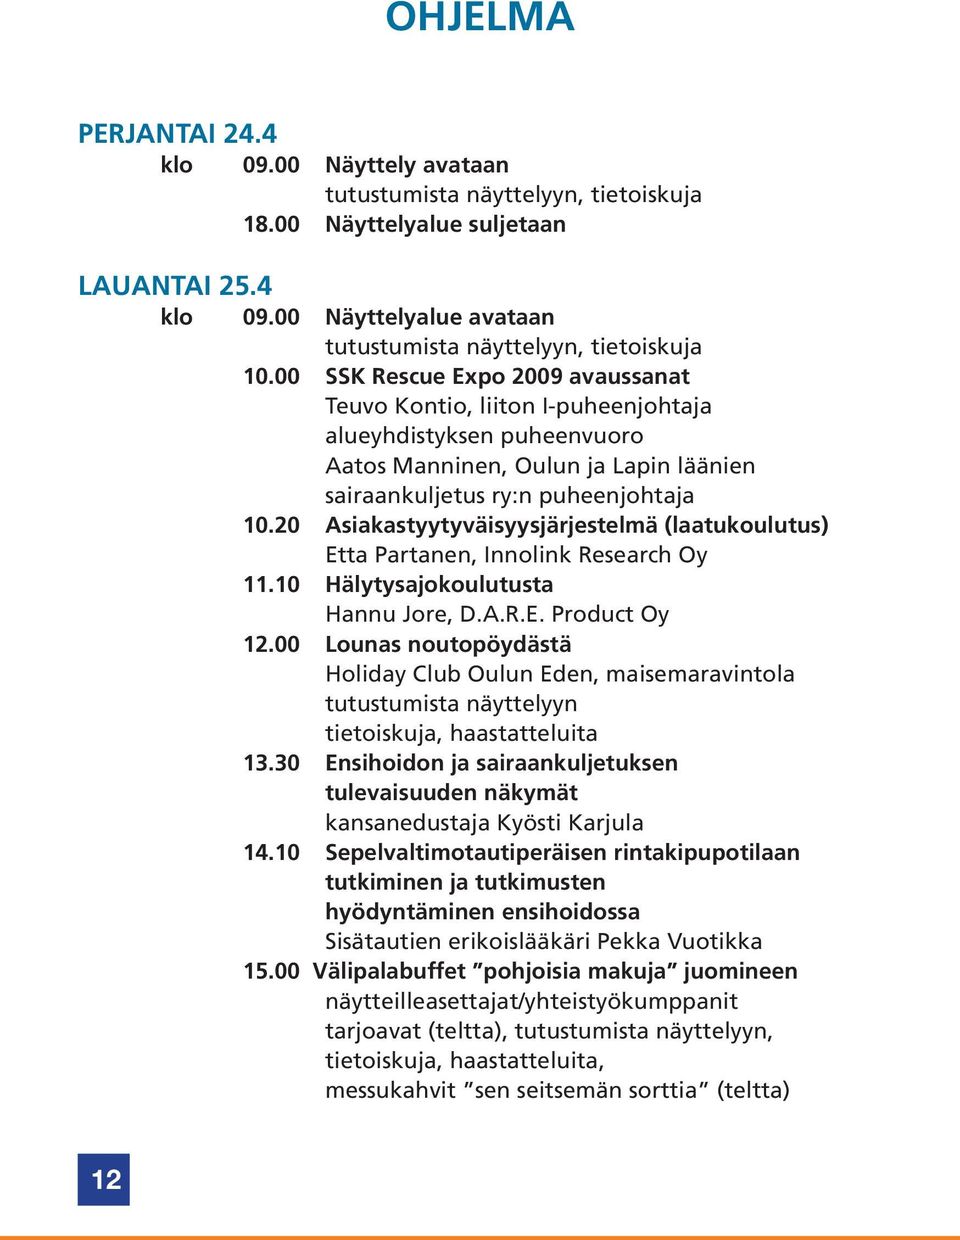 20 Asiakastyytyväisyysjärjestelmä (laatukoulutus) Etta Partanen, Innolink Research Oy 11.10 Hälytysajokoulutusta Hannu Jore, D.A.R.E. Product Oy 12.